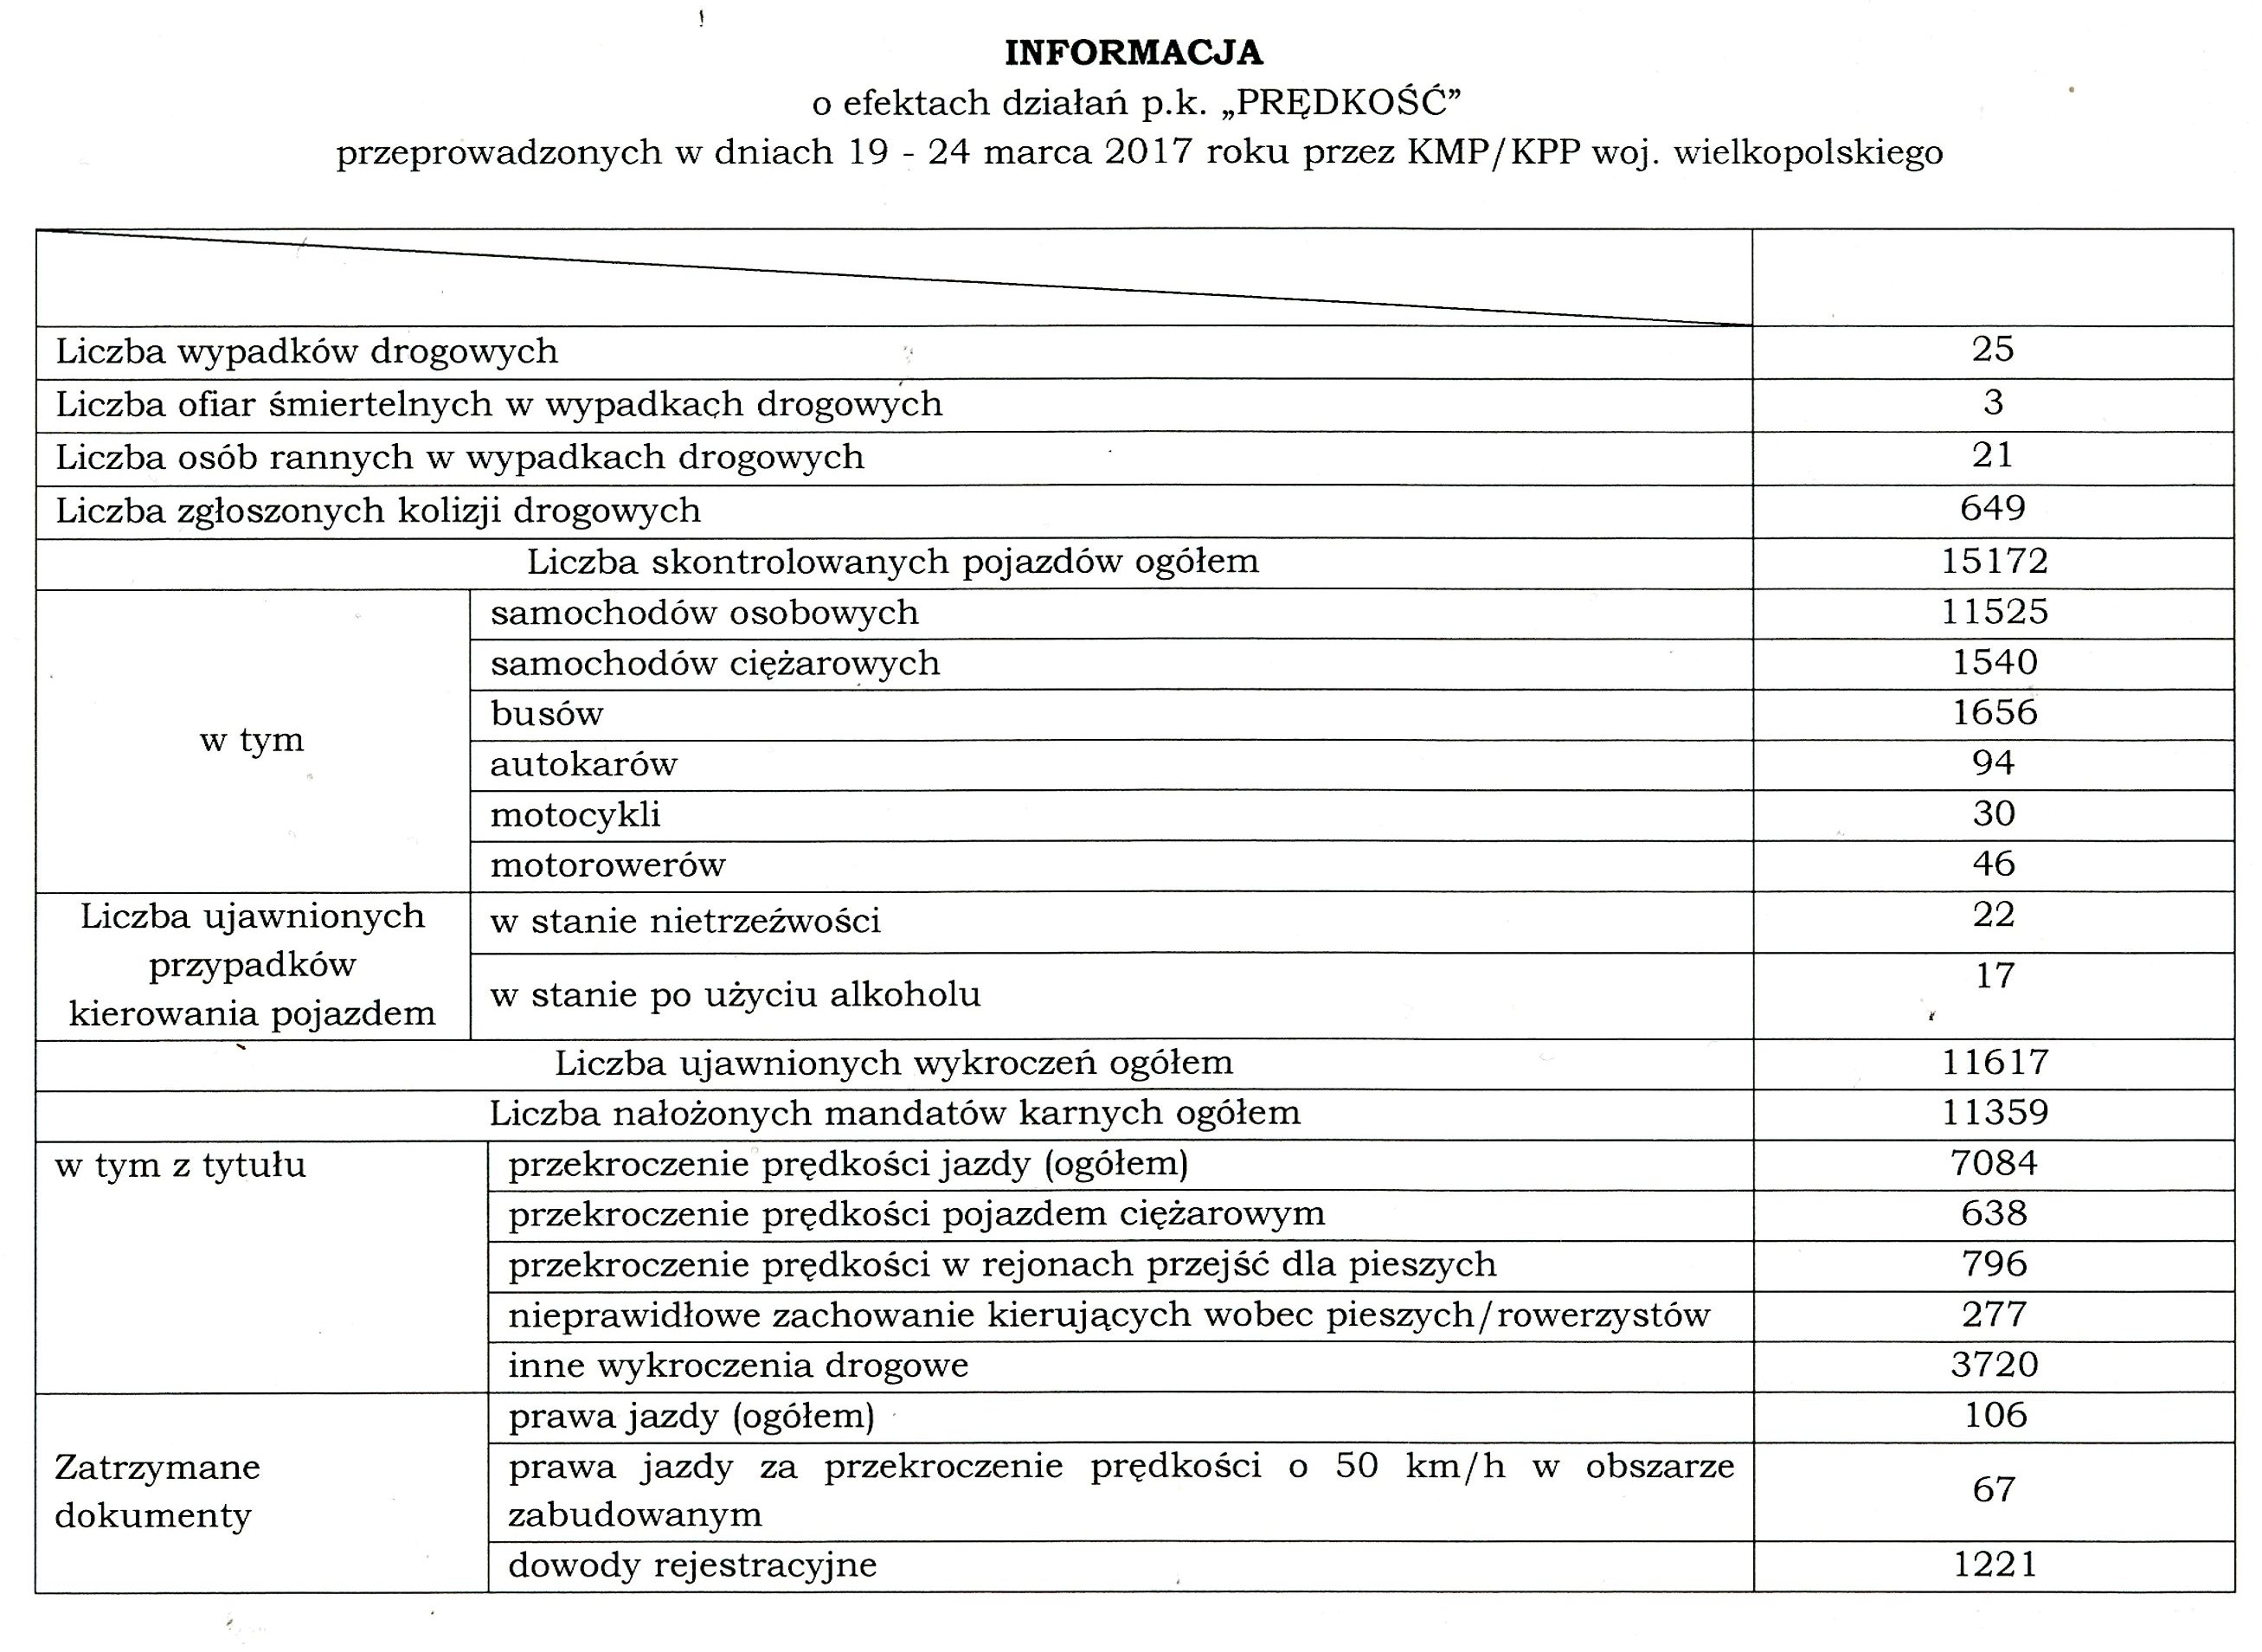 http://krotoszyn.policja.gov.pl/dokumenty/zalaczniki/320/320-160604.jpg